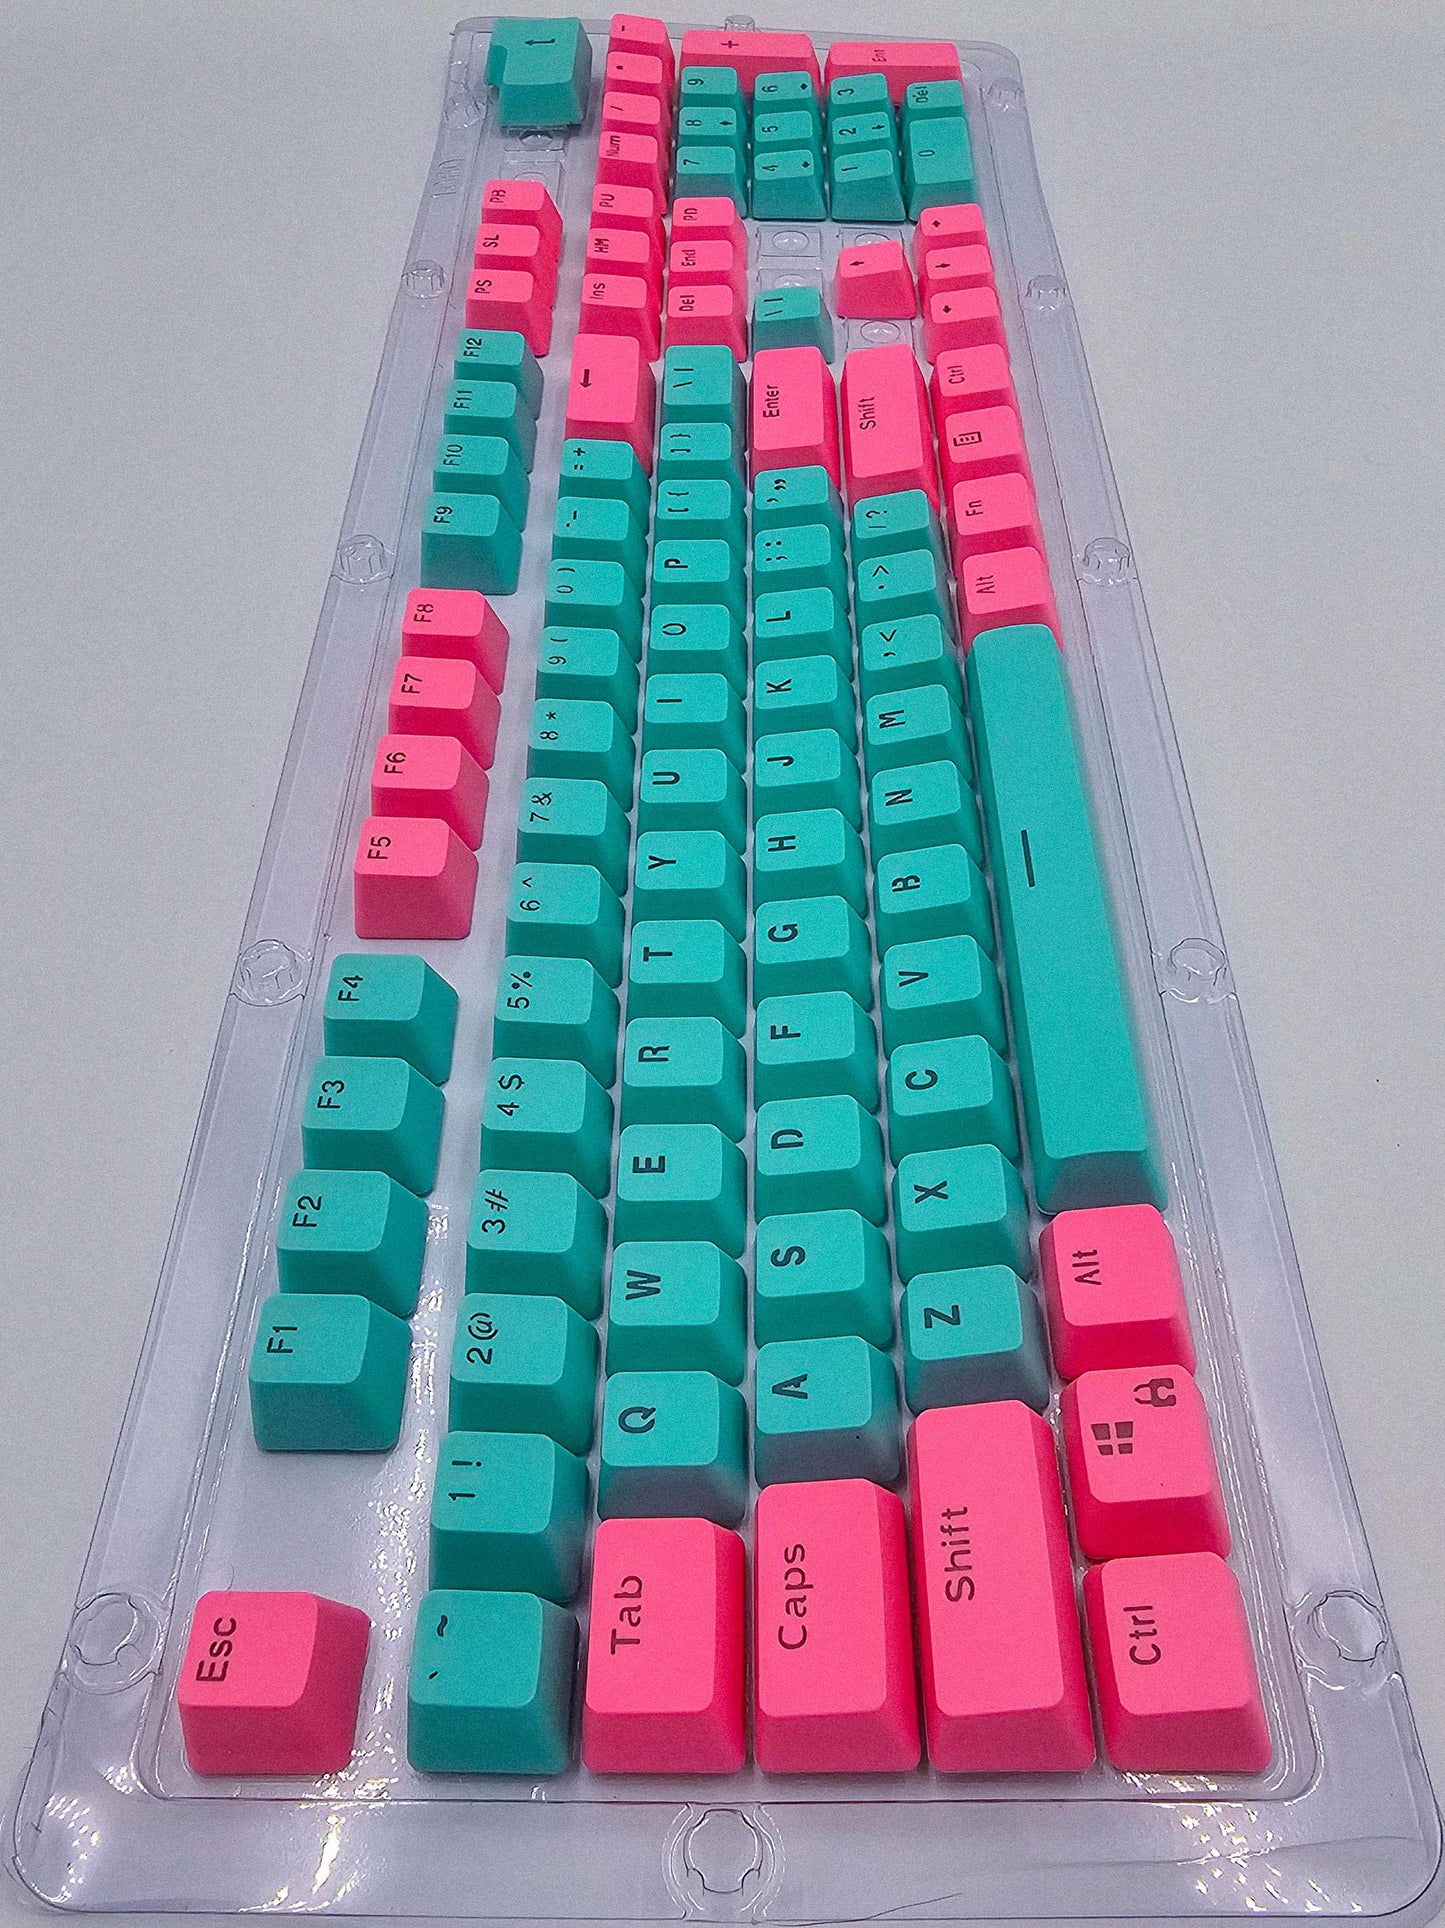 Full Size 104 Key Pink & Turquoise Keycaps